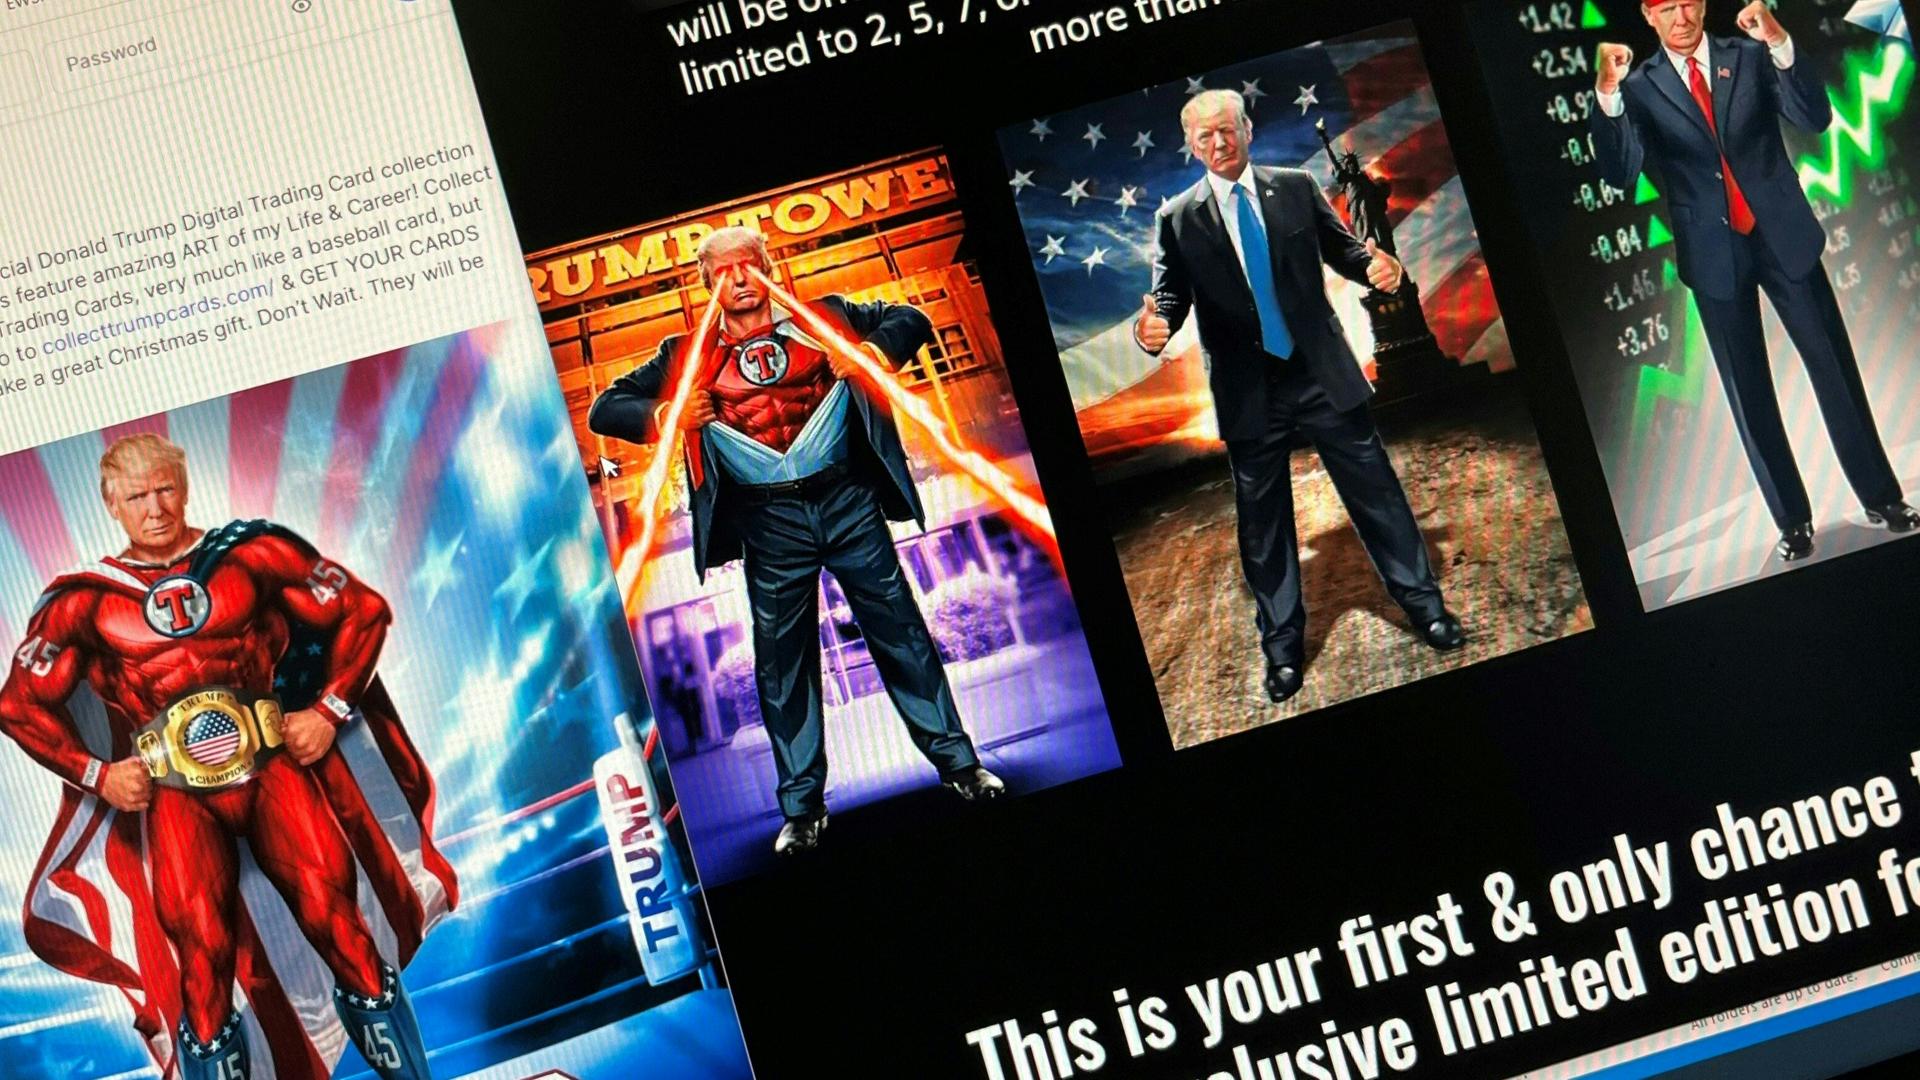 Eine Website zeigt verschiedene Abbildungen von Donald Trump, beispielsweise im Superheldencape oder mit geballten Fäusten vor einem steigenden Aktienkurs.